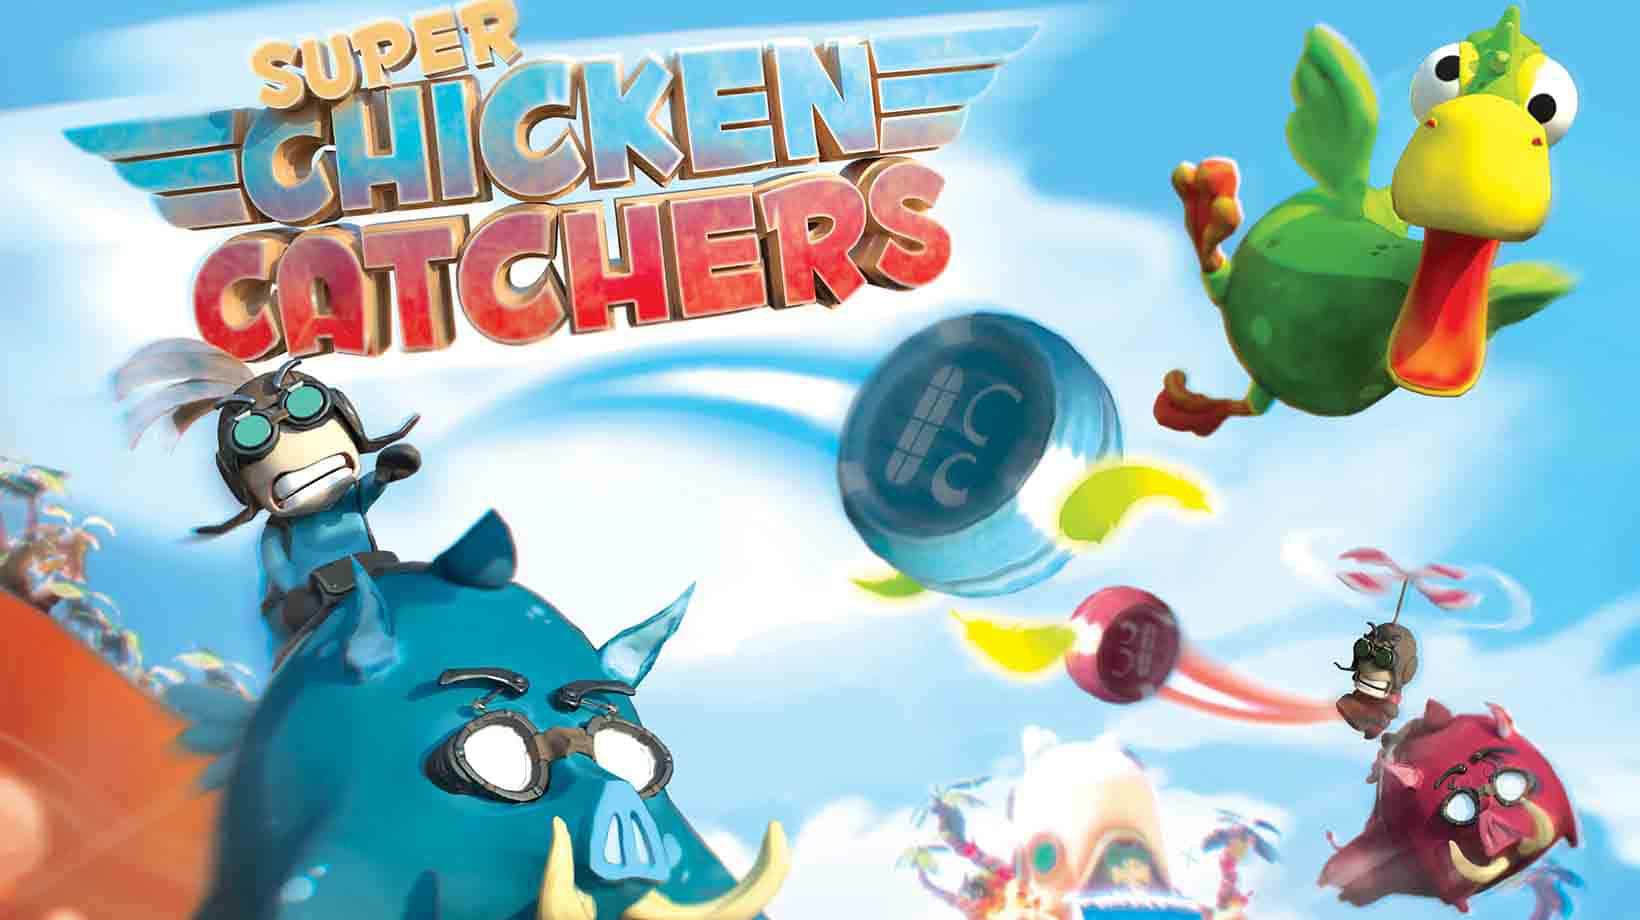 Super chicken catchers